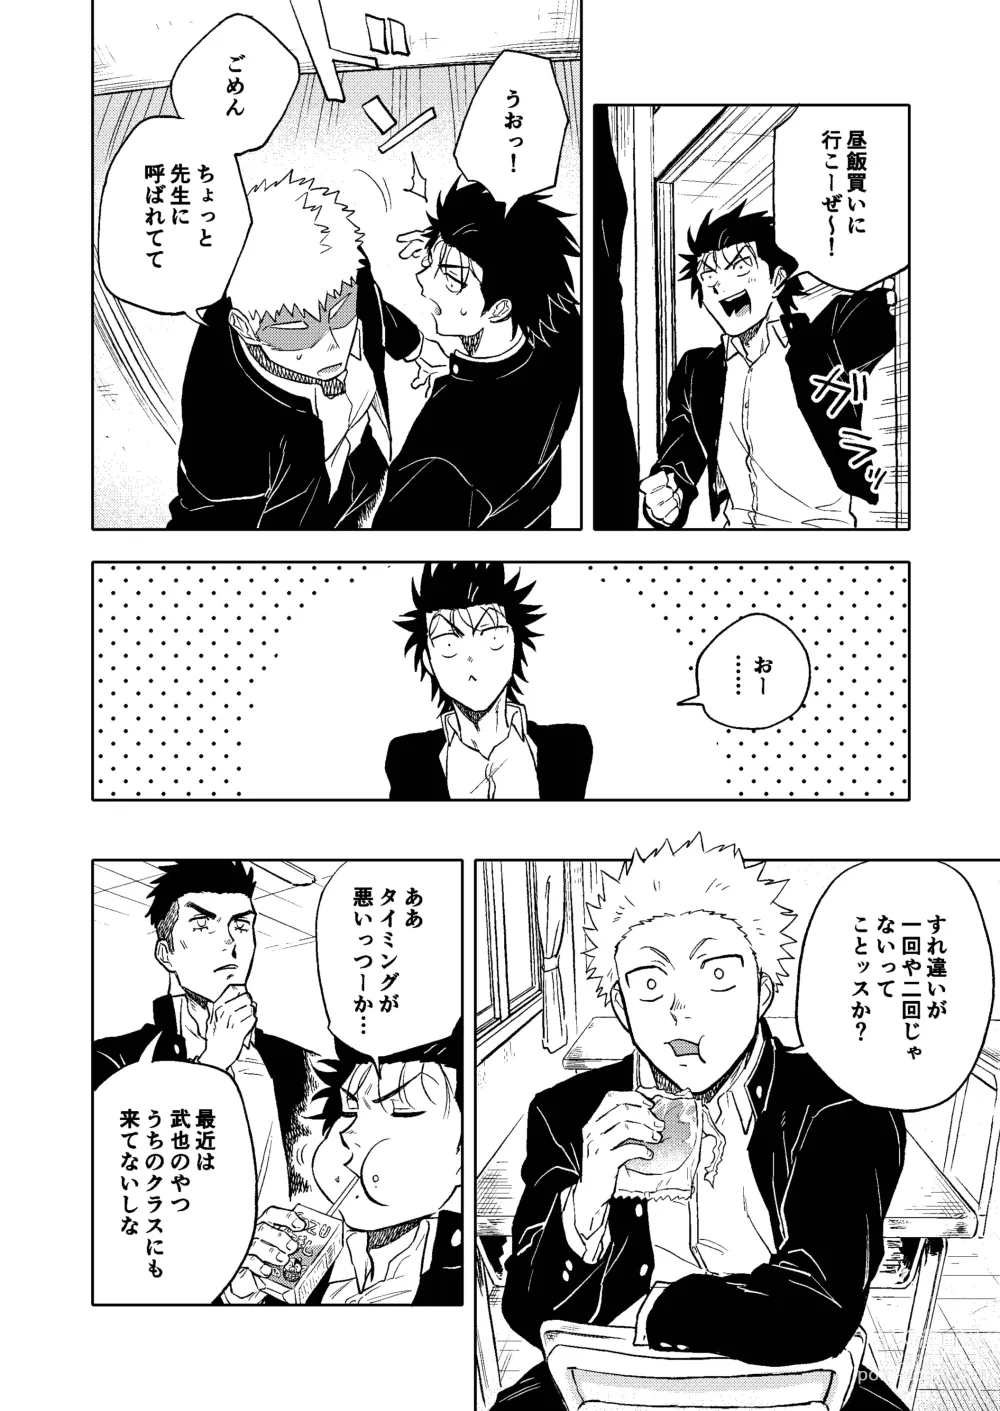 Page 5 of doujinshi Dainarishounari 2